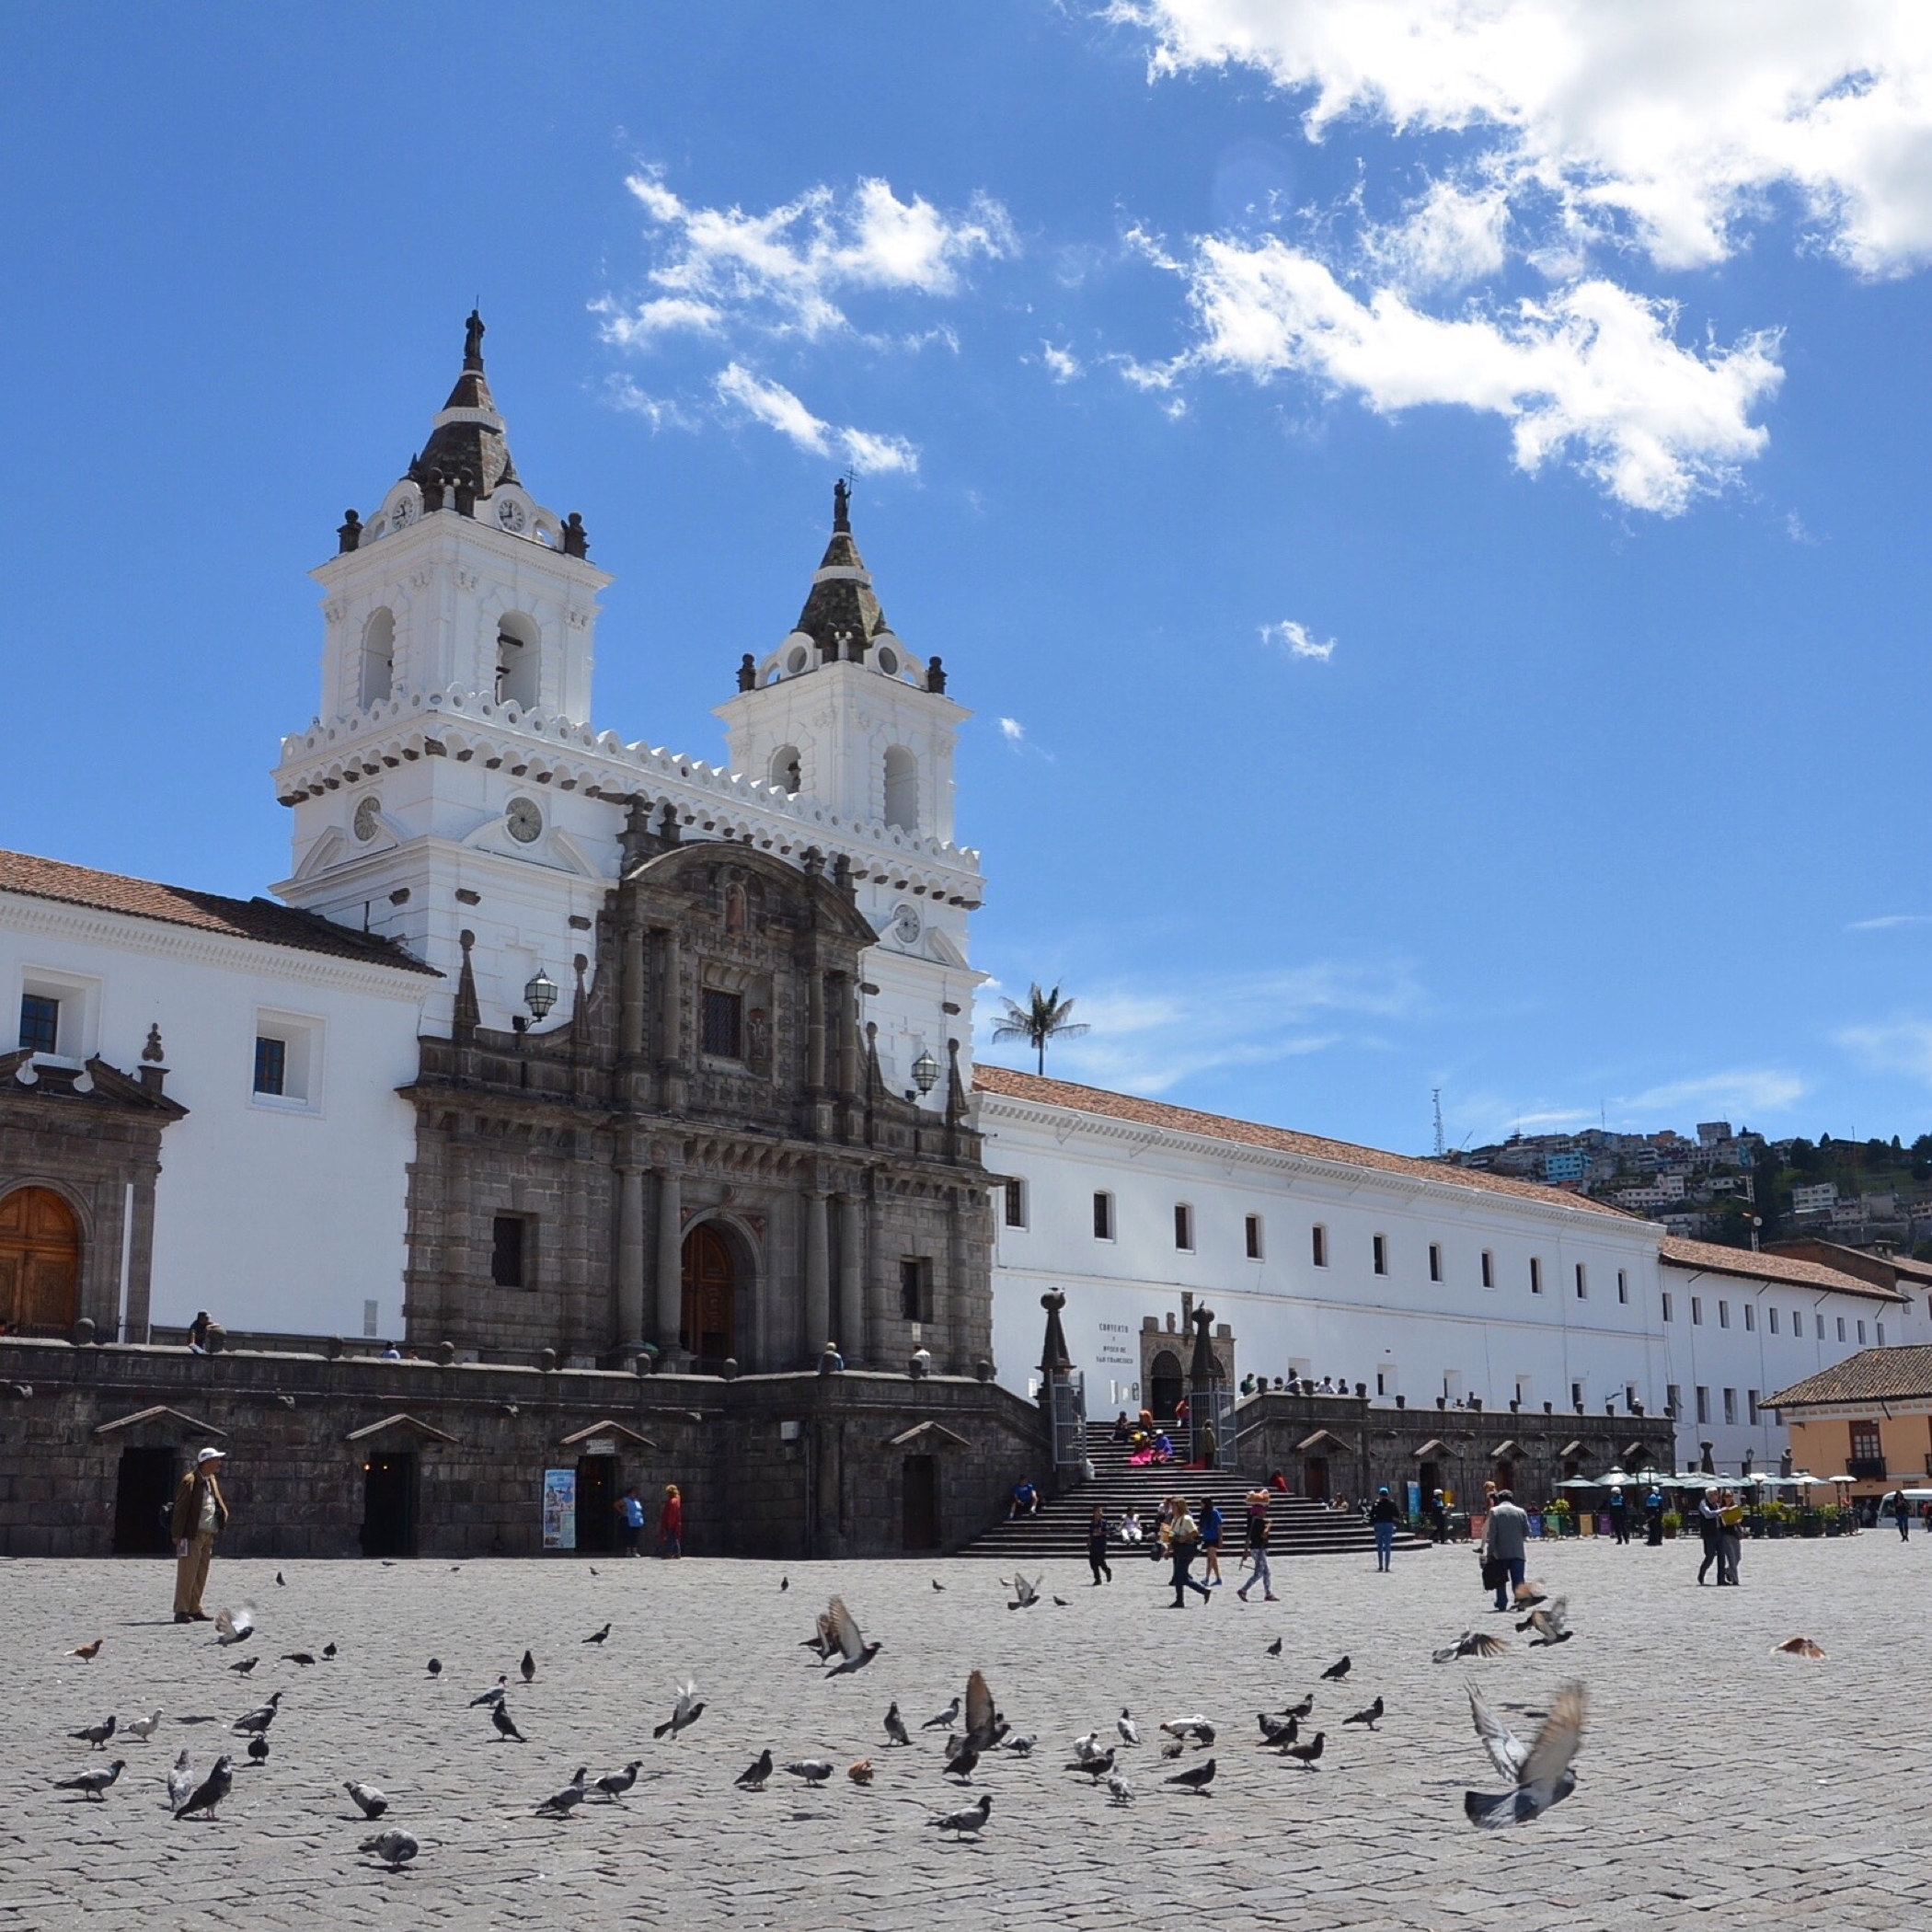 One favorite Instagram 2015 photo from Quito in Ecuador